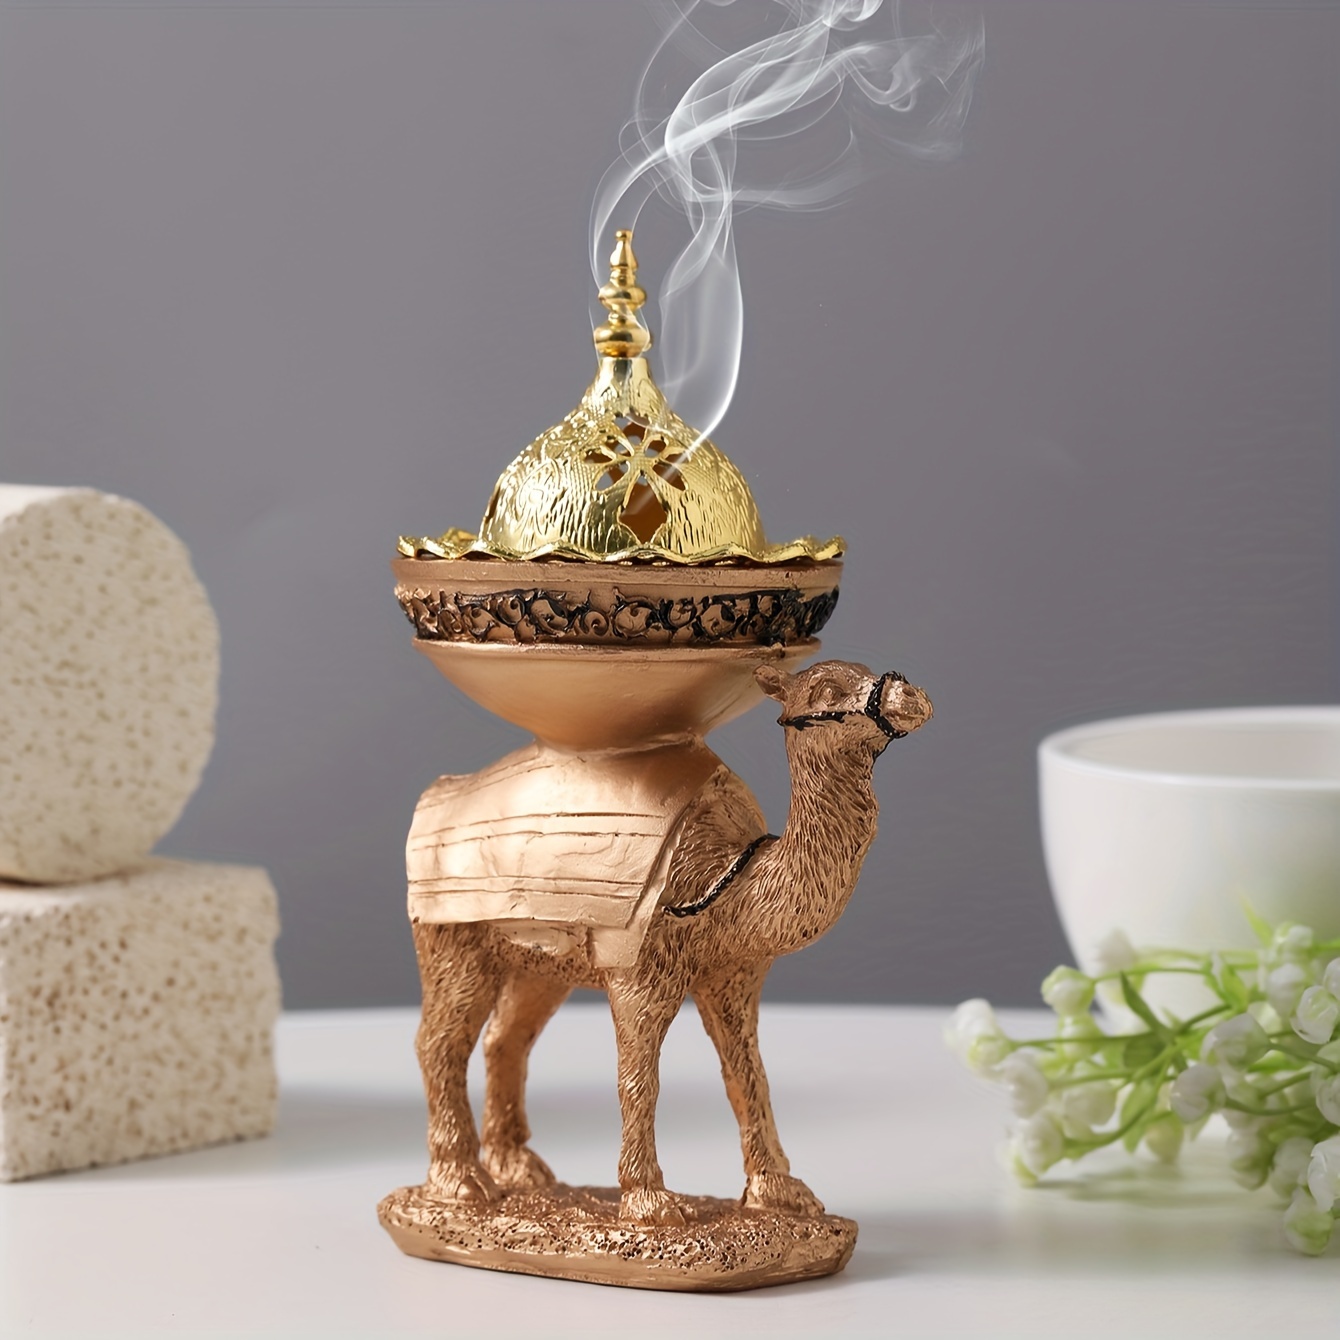 

1pc Nordic Style Incense Holder, Resin Standing Camel Incense Burner Desktop Ornament